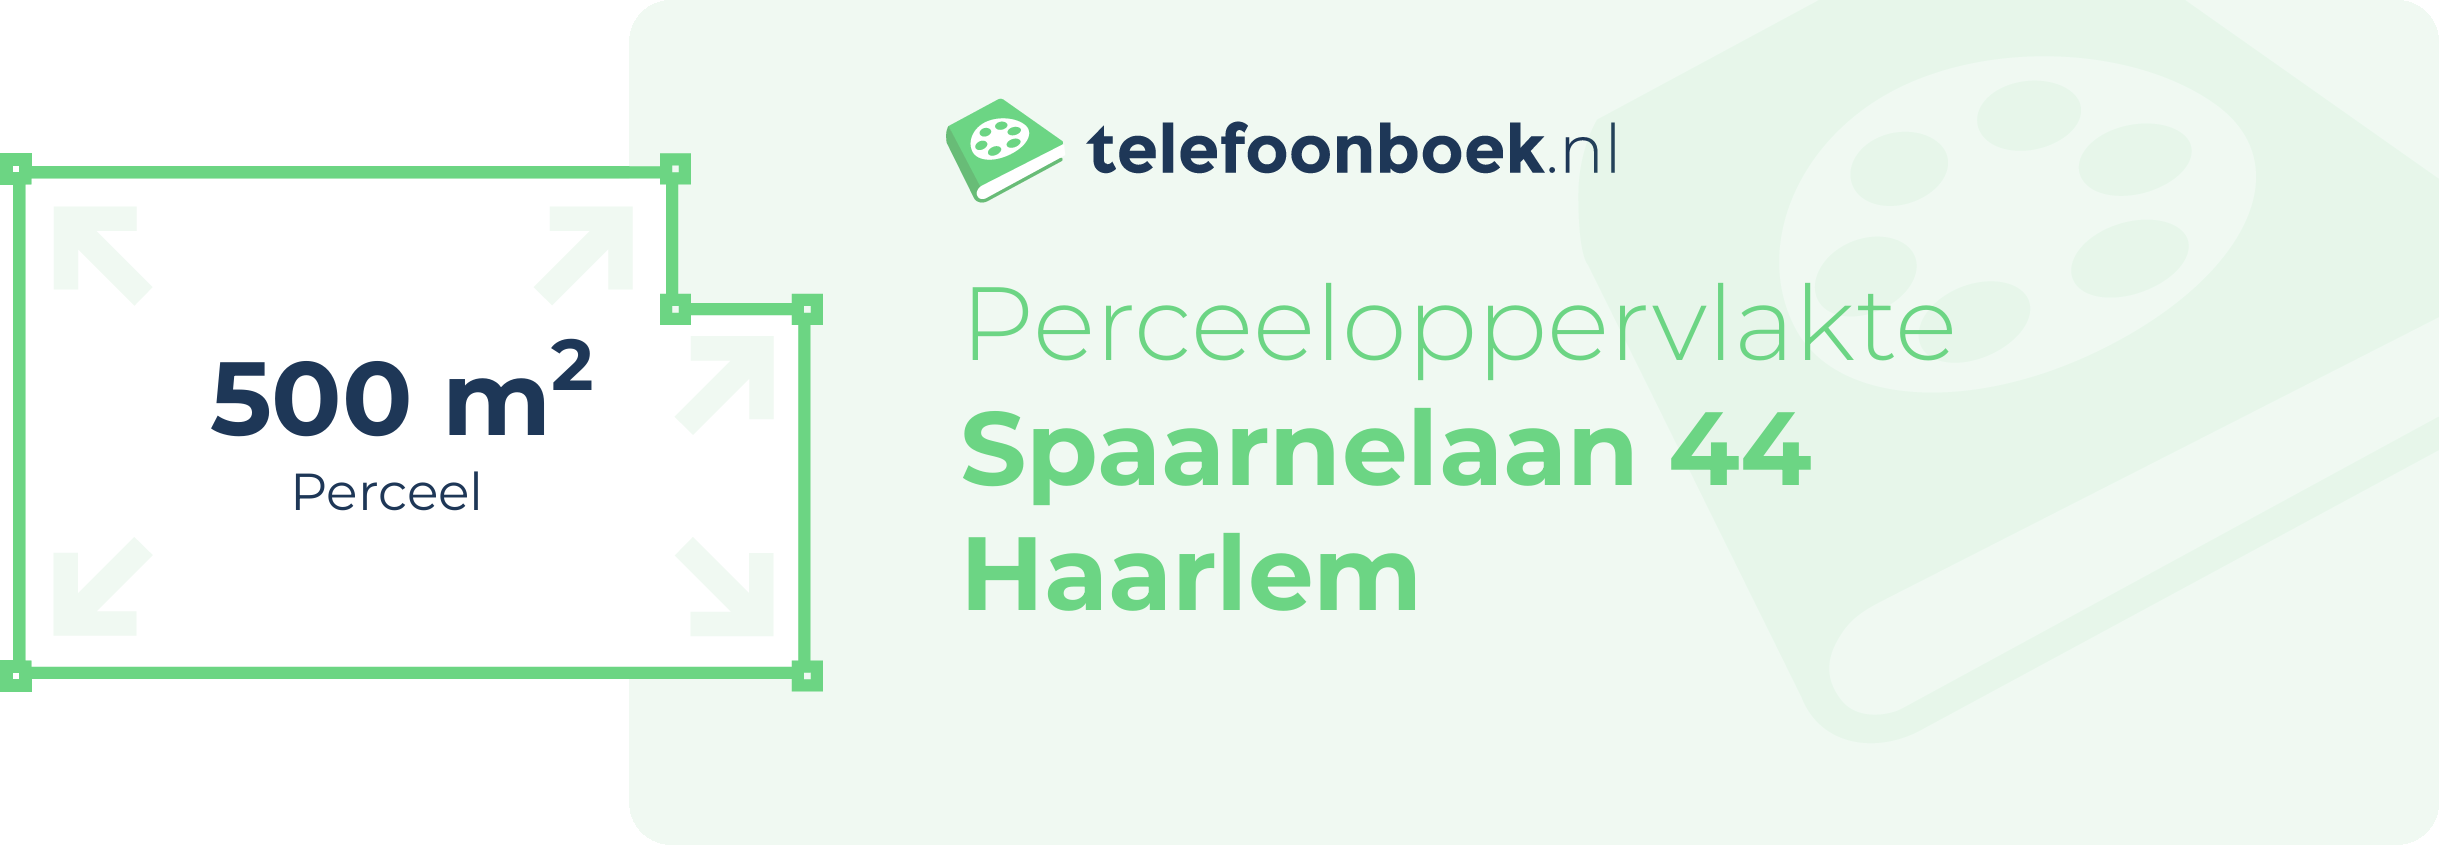 Perceeloppervlakte Spaarnelaan 44 Haarlem